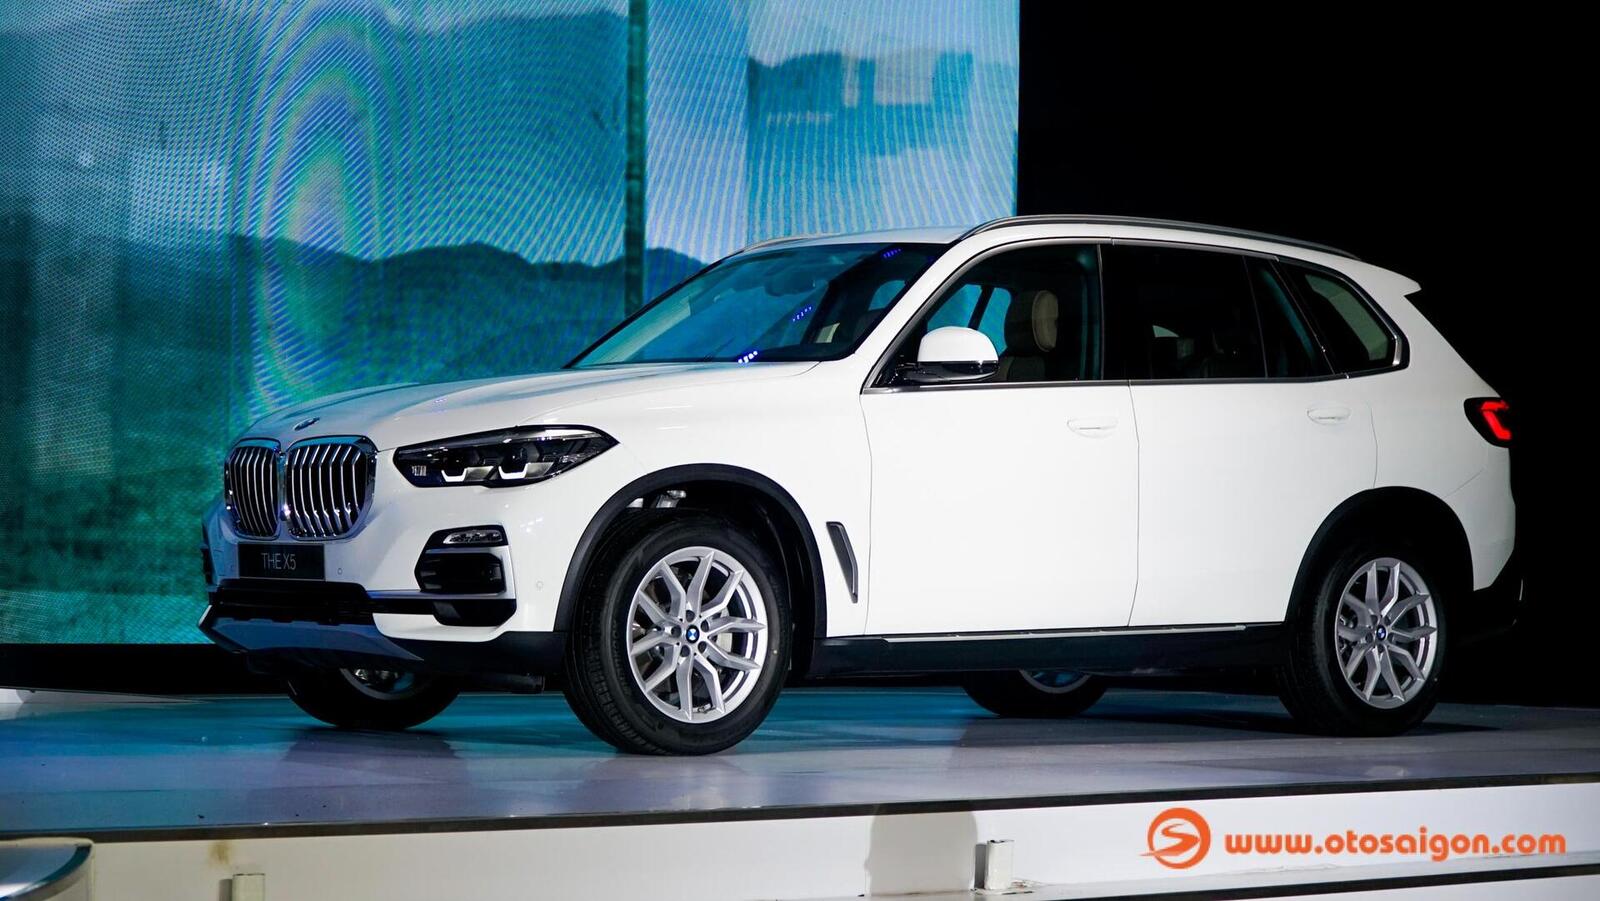 Giá xe BMW X5 đời 2020 mới lăn bánh 100 km bán lỗ hơn 1 tỷ đồng